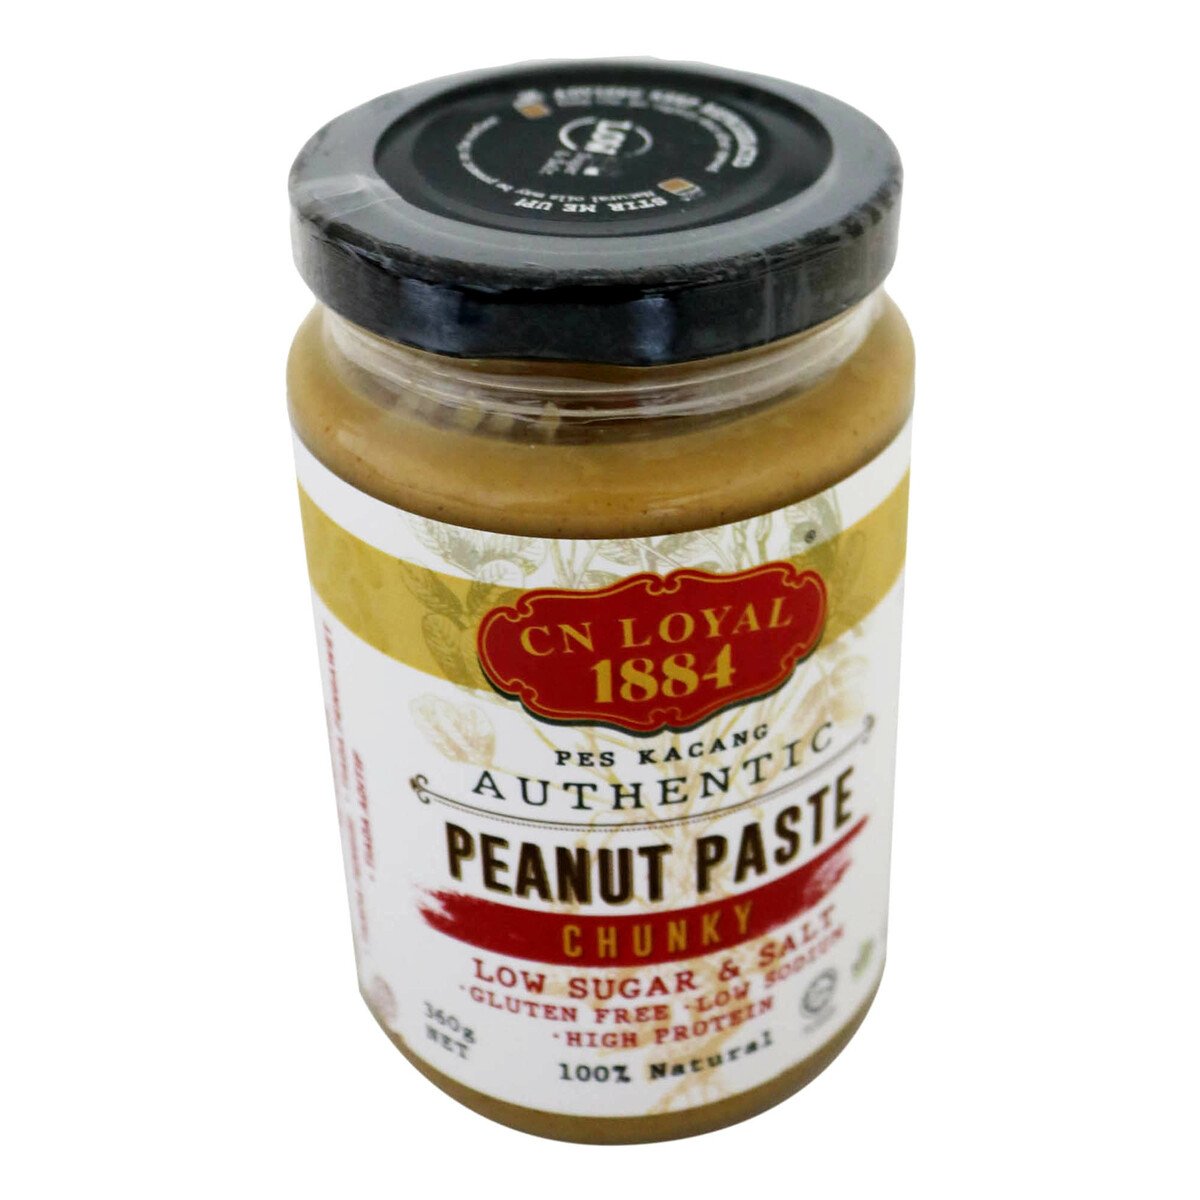 CN Loyal 1884 Peanut Paste Chunky Low Sugar & Salt 360g